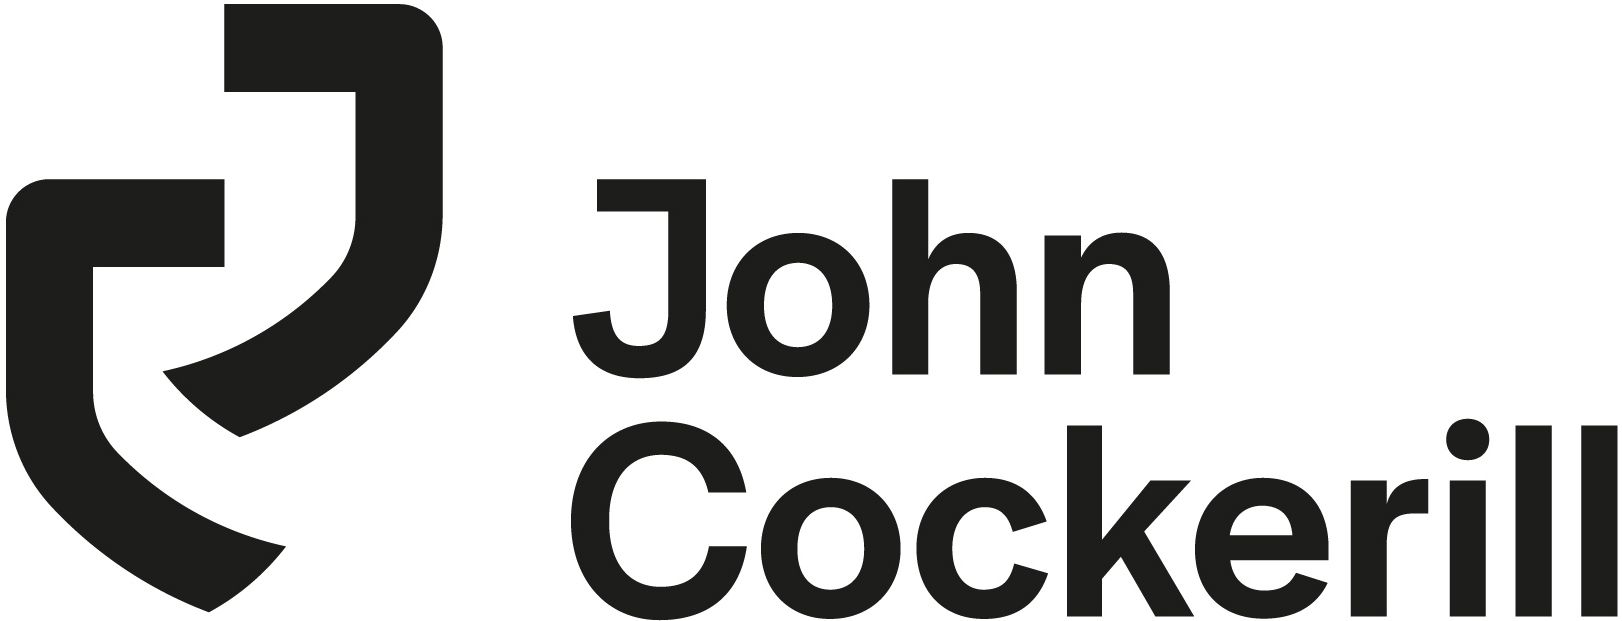 John Cockerill